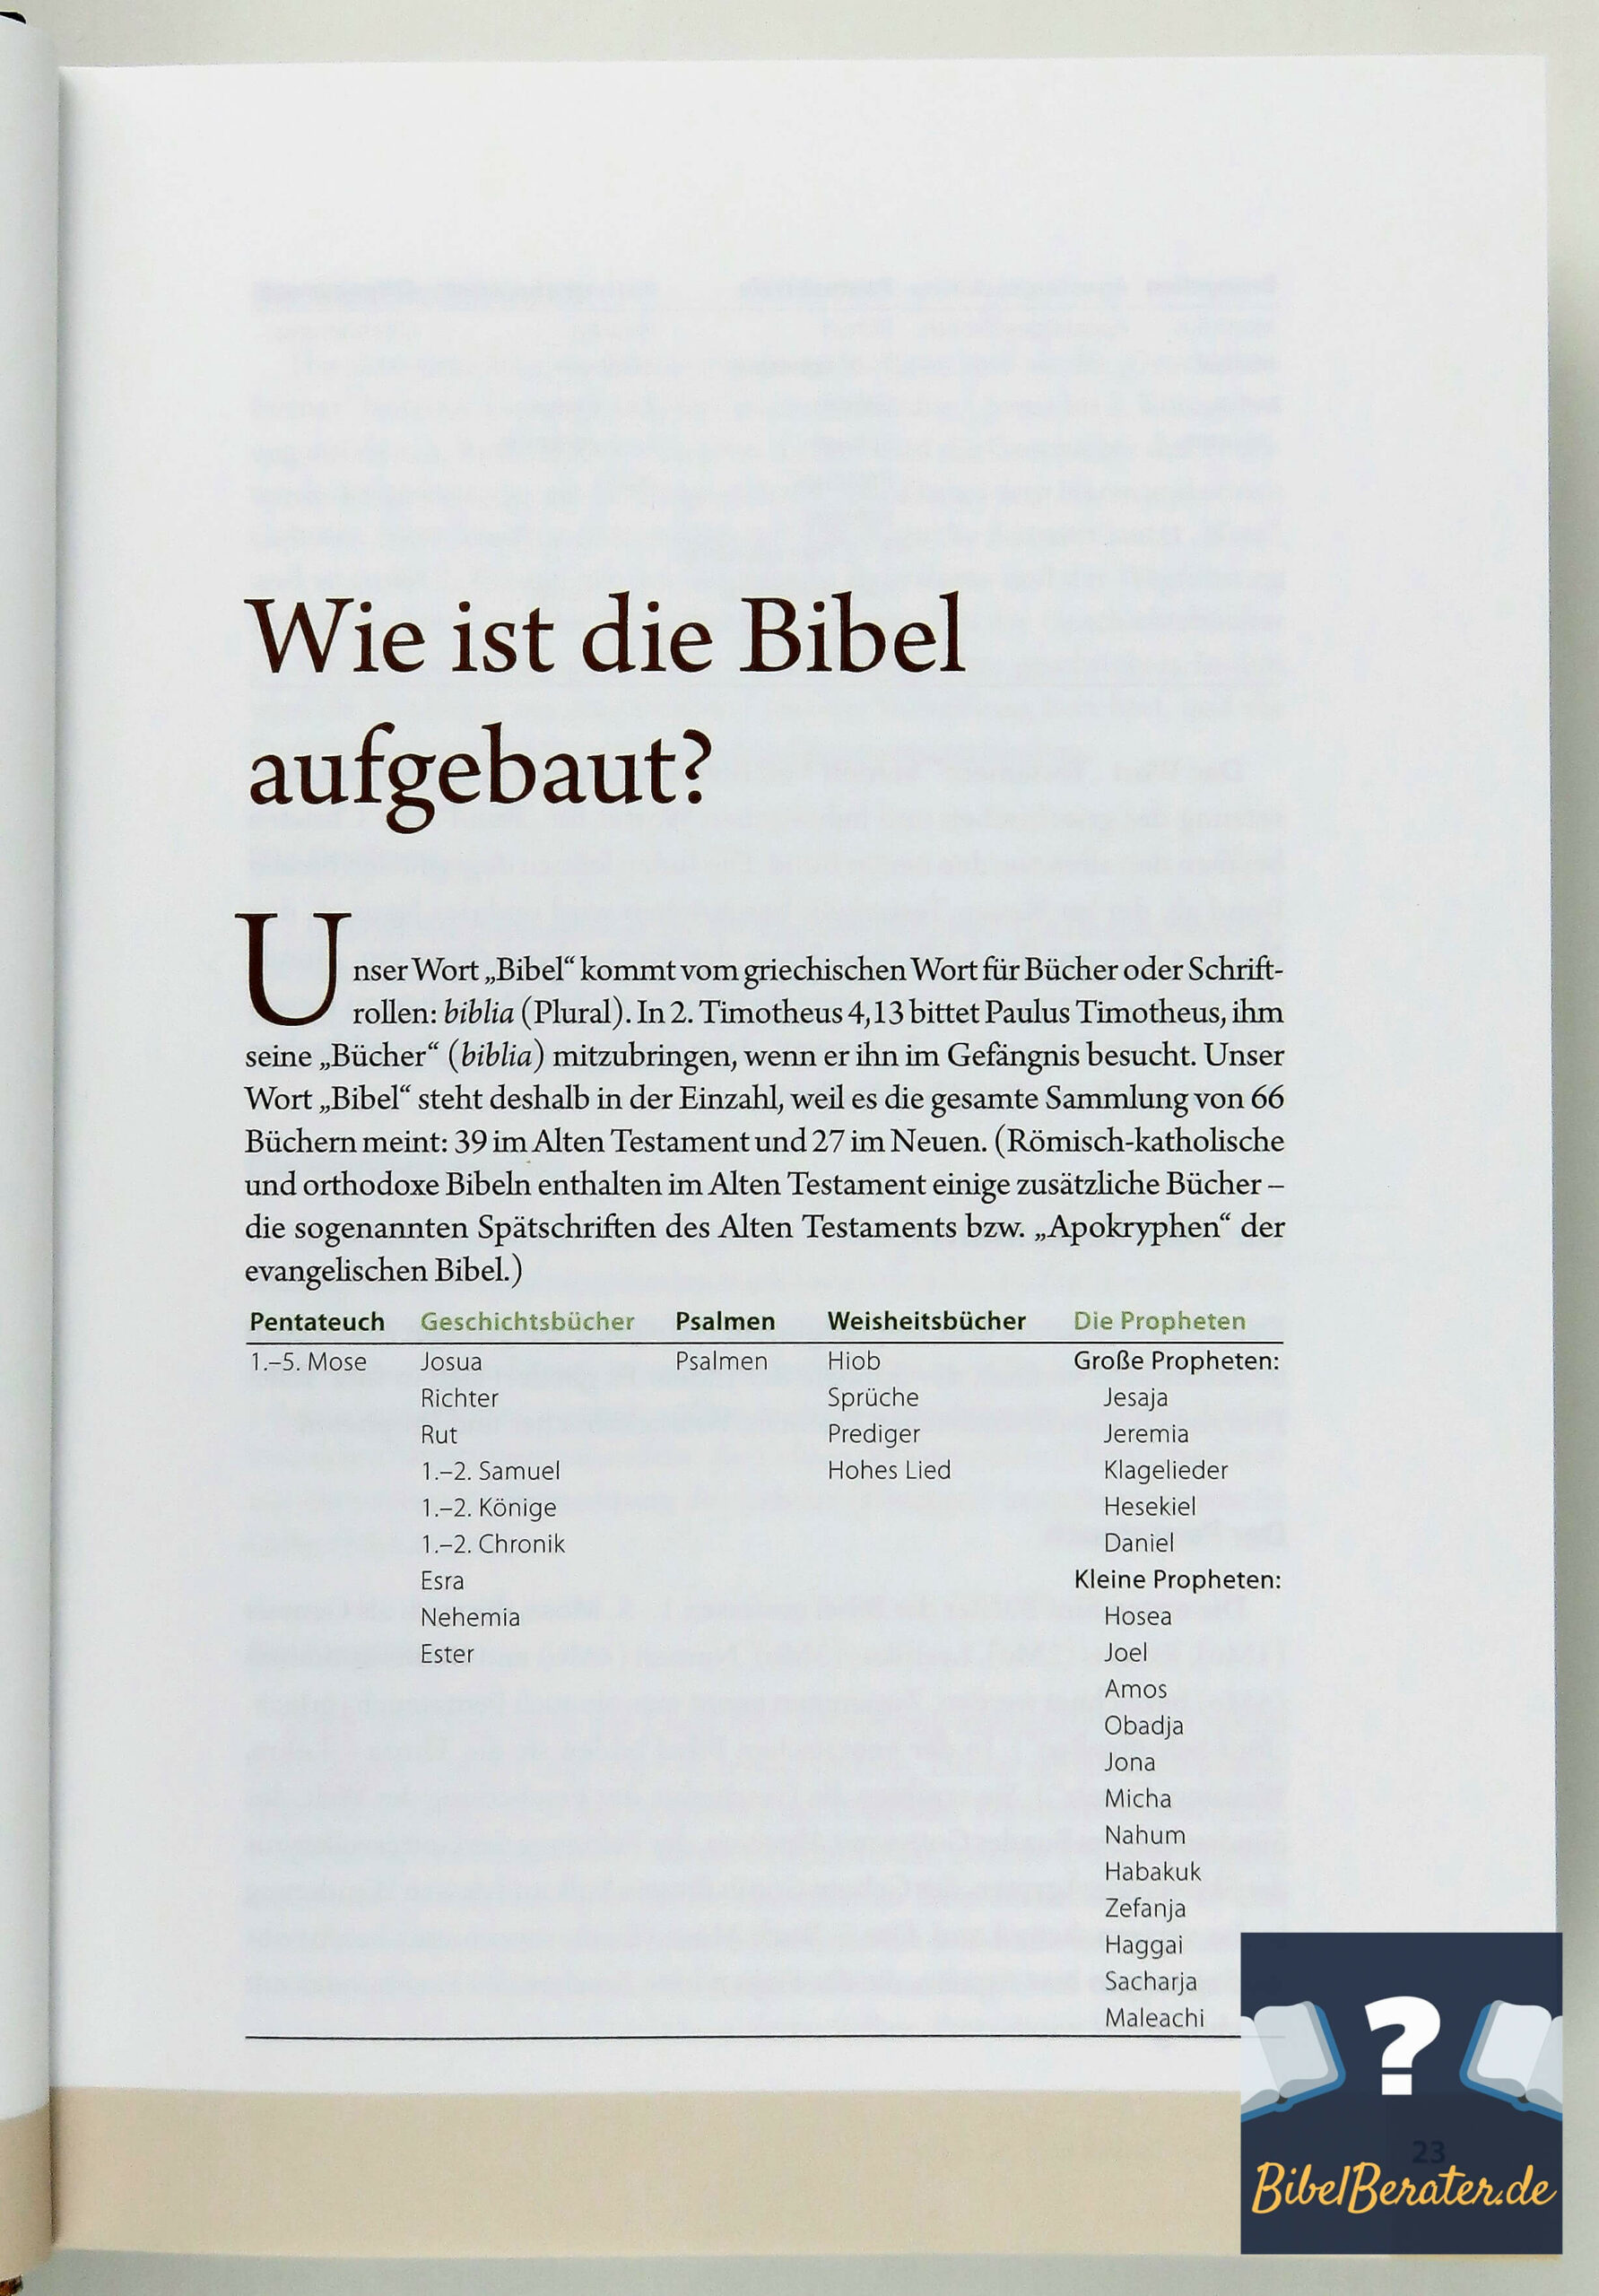 Das illustrierte Handbuch zur Bibel - Wie ist die Bibel aufgebaut